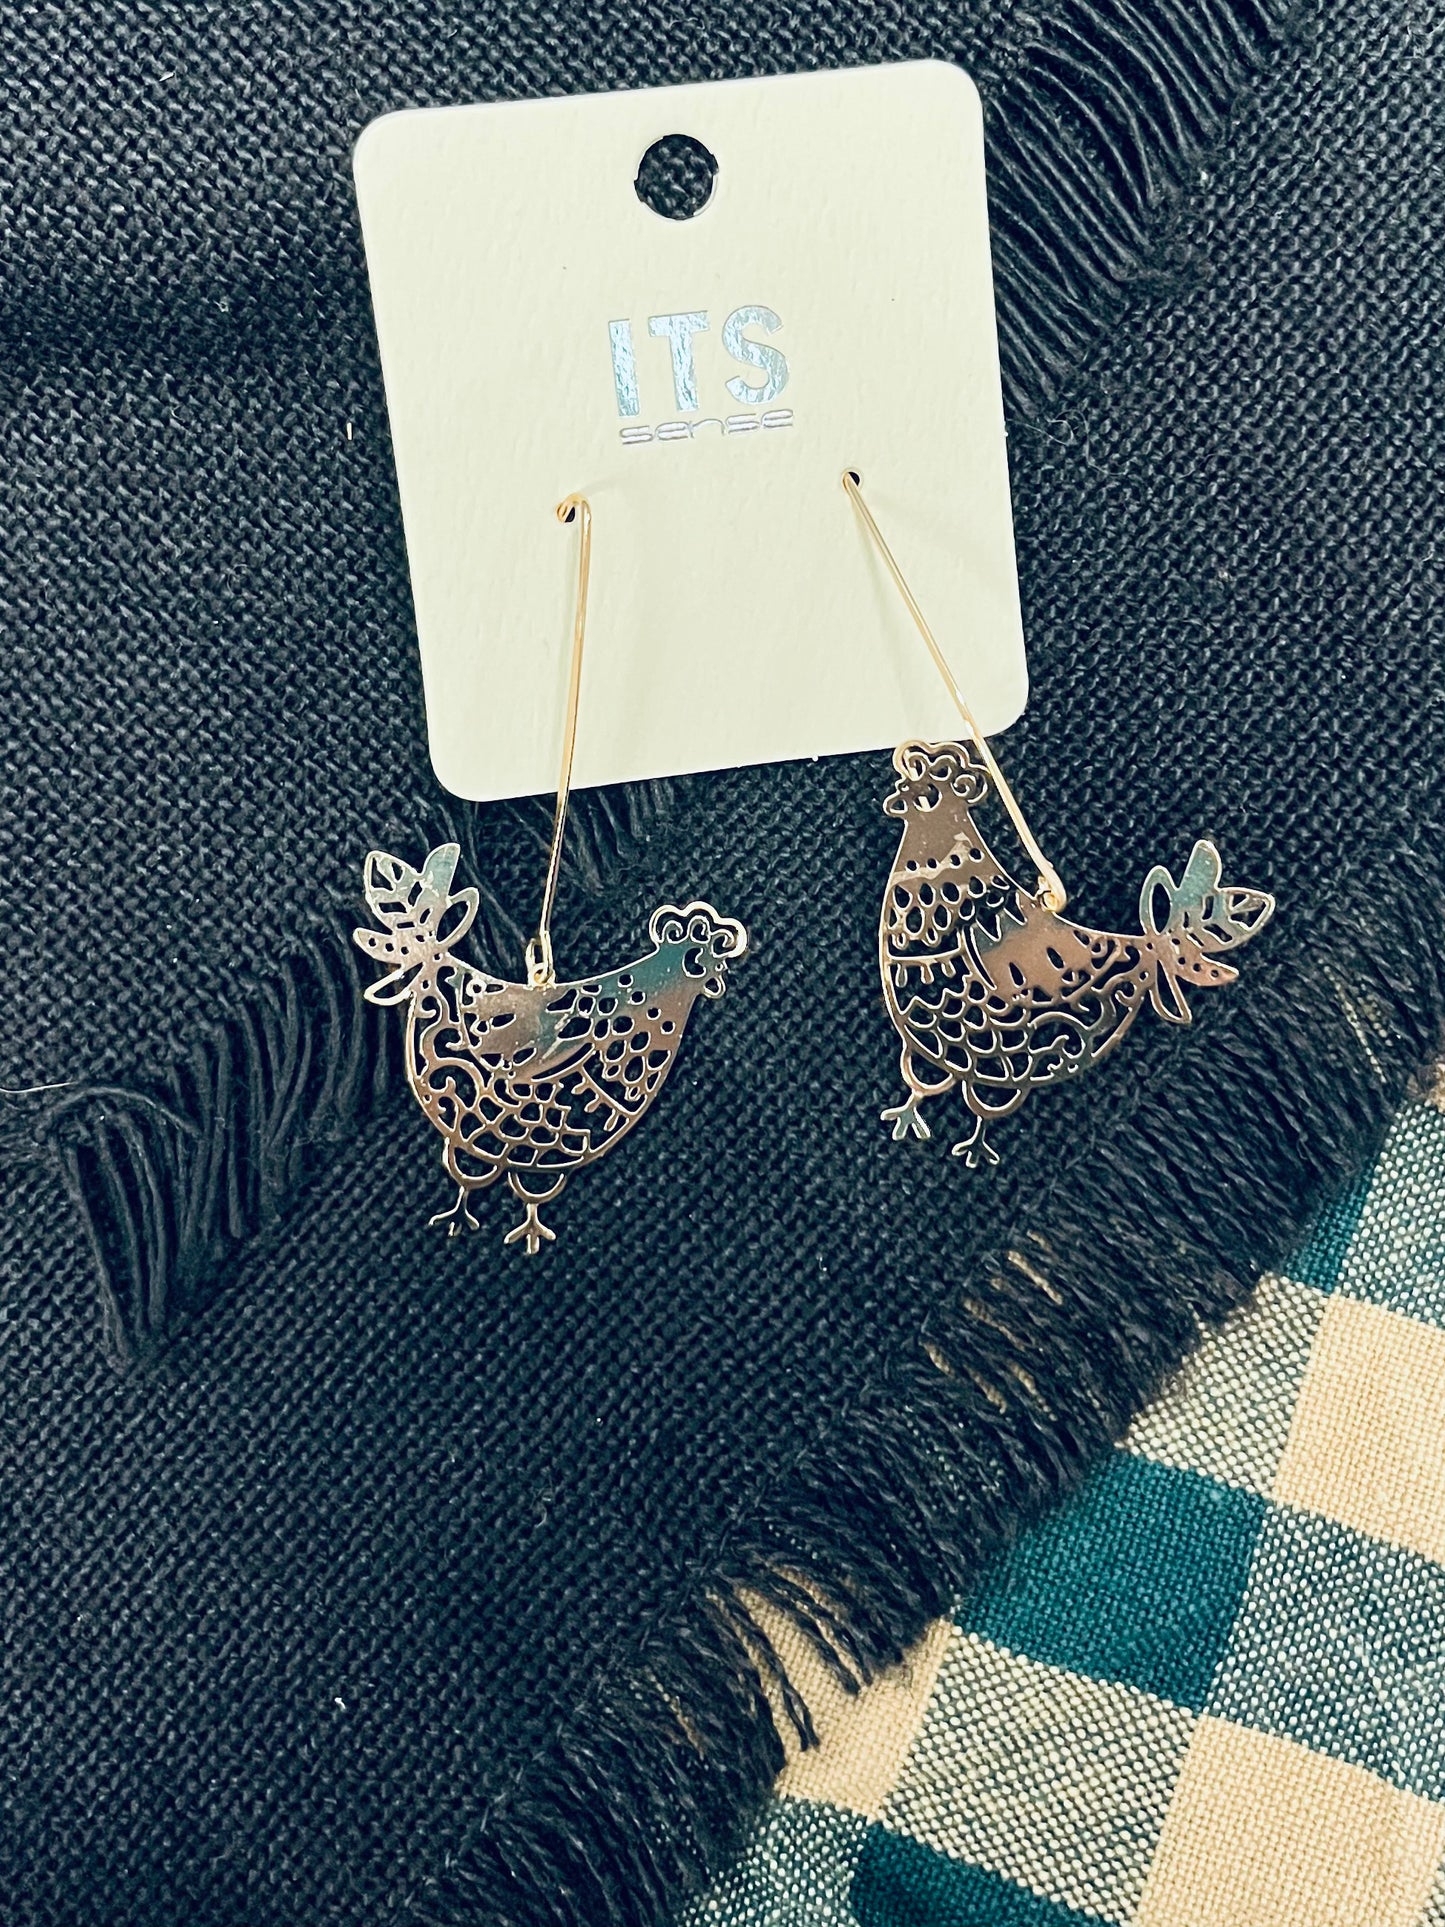 Chicken earrings